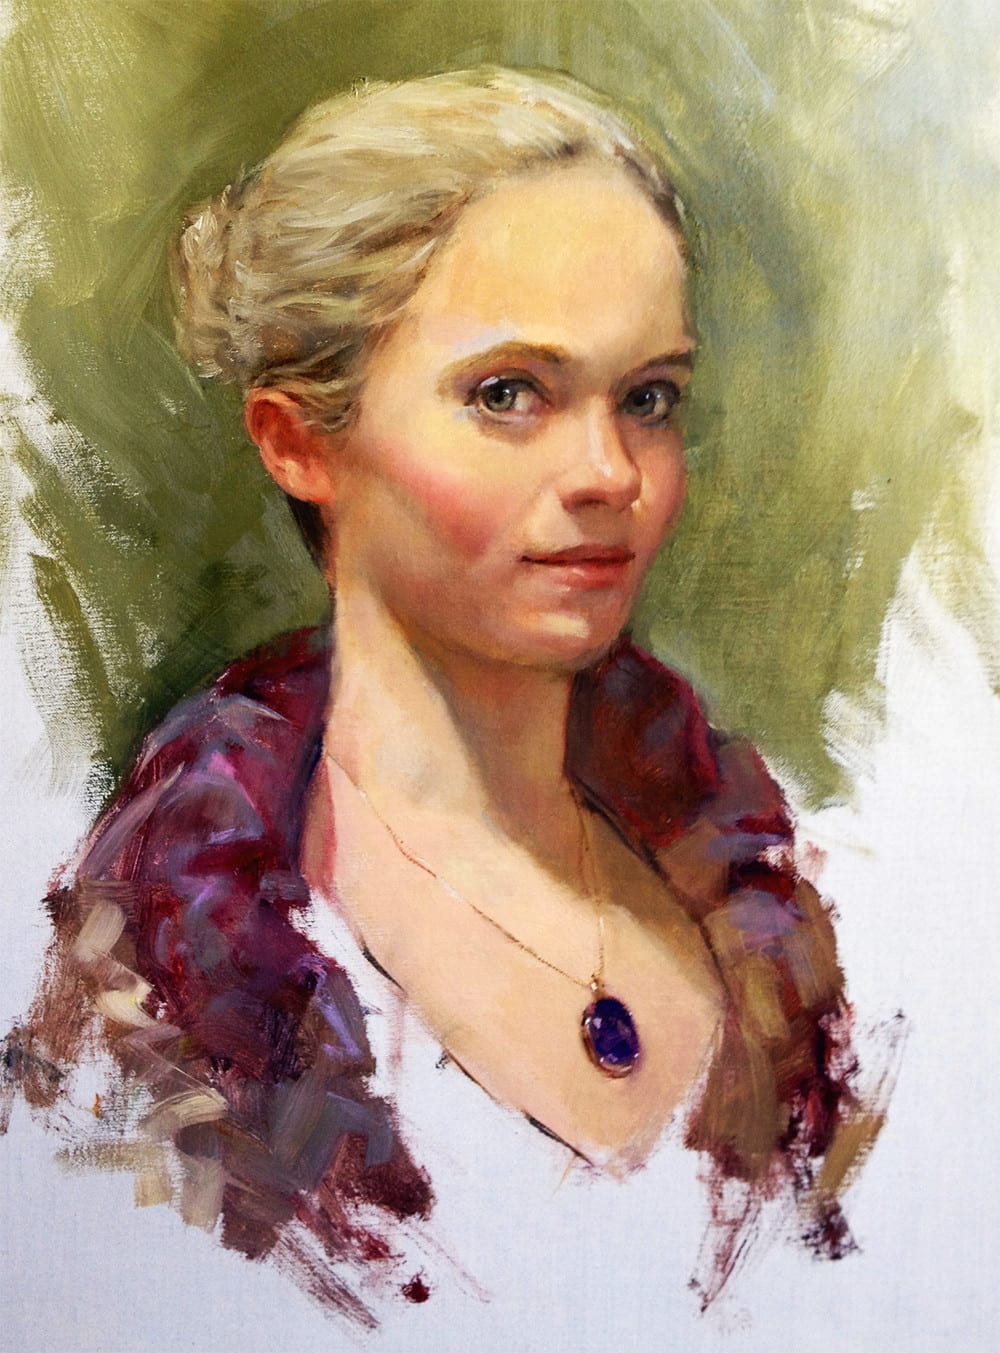 Paint Oil Painting Portrait By Darlatkopp Fiverr